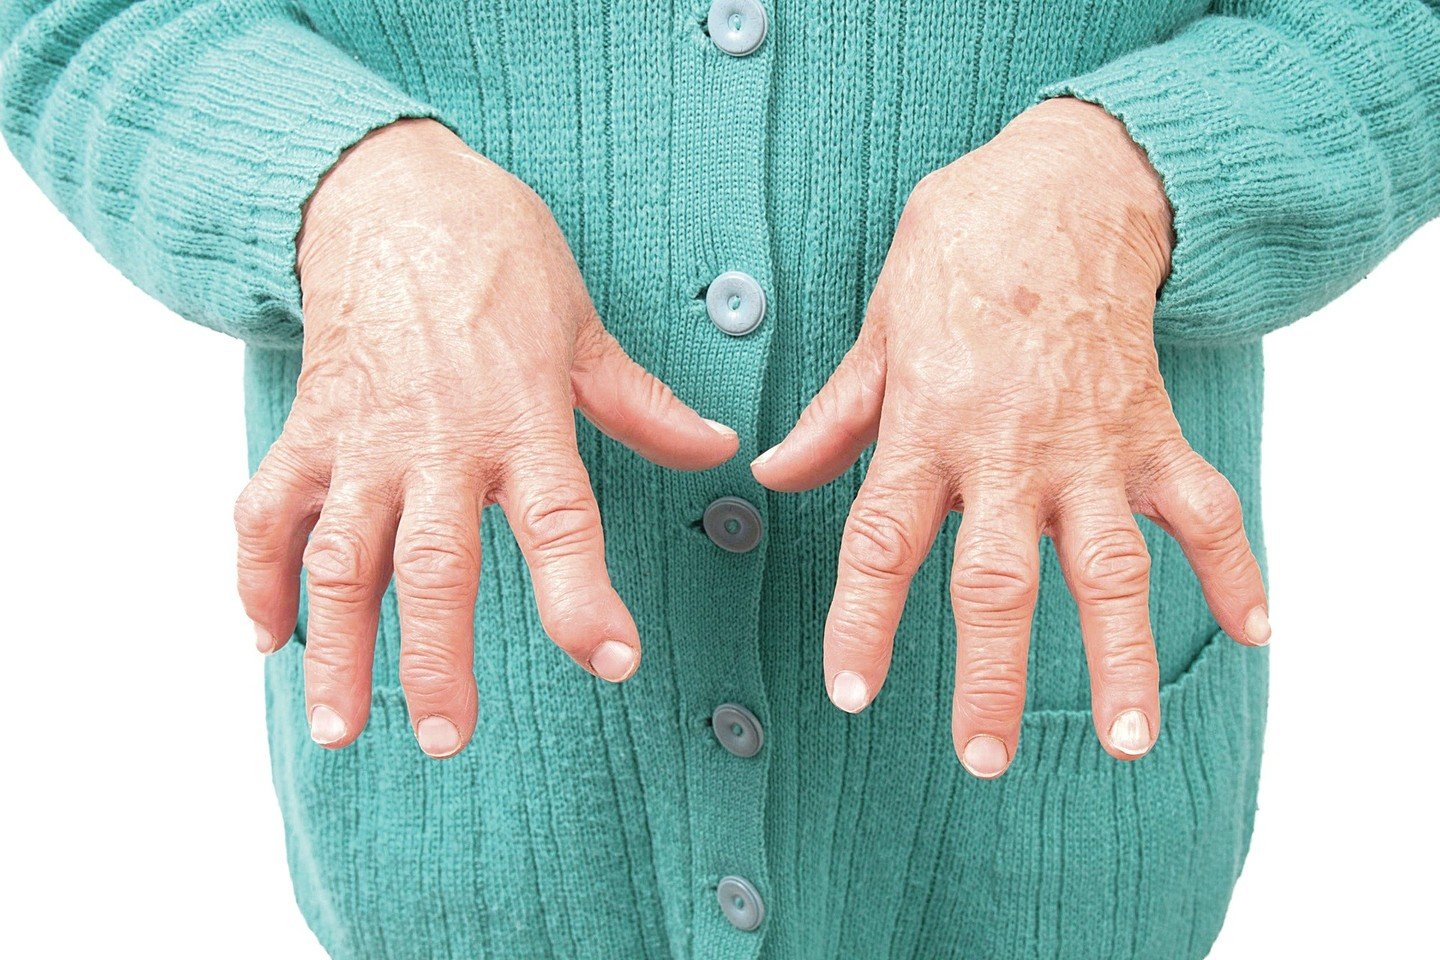 kulno sąnariai gydymas artrozė iš rankų riešo gydymo liaudies gynimo